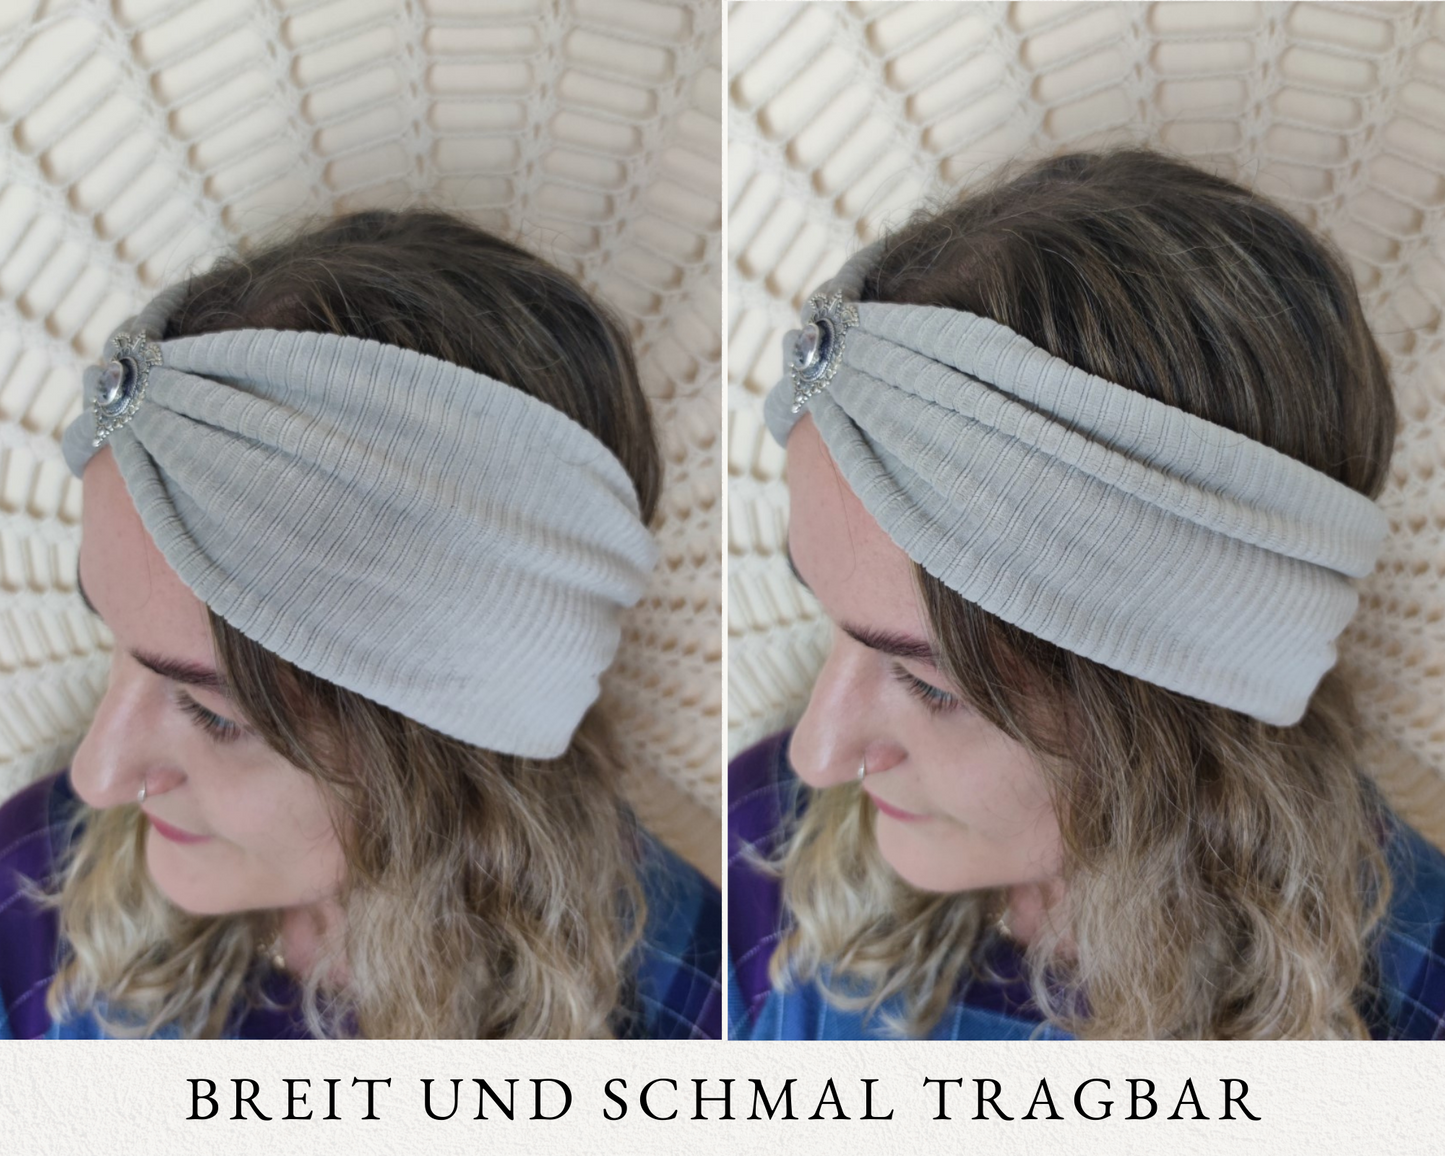 Tuba Haarband in Kiwigrün - aus Samt mit Edelsteinen verziert